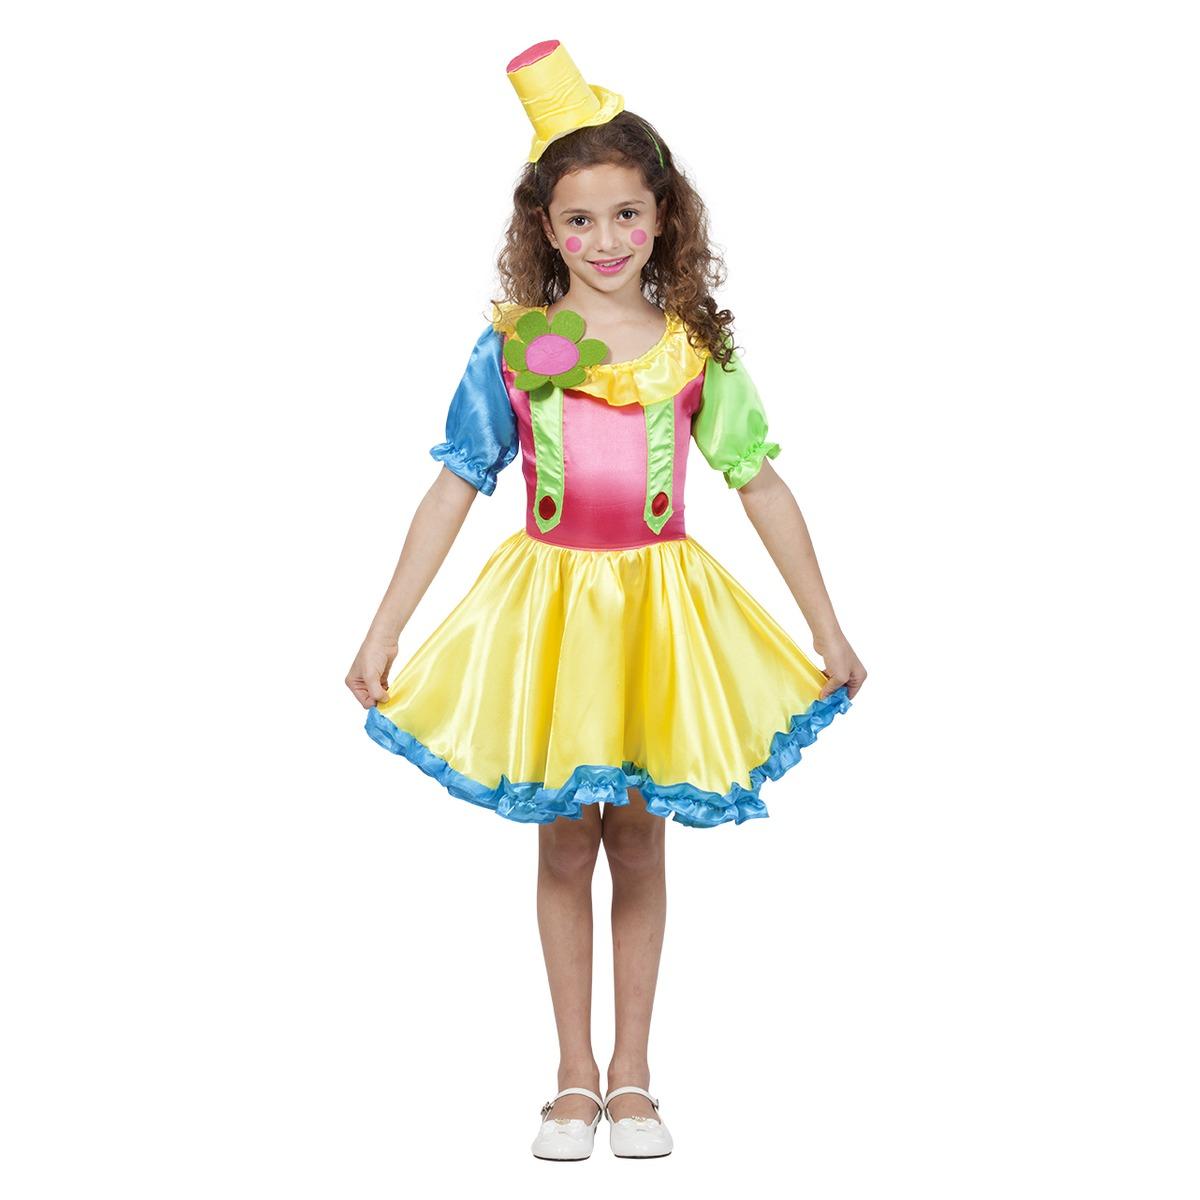 Déguisement clown fluo fille - 7 à 12 ans - Multicolore